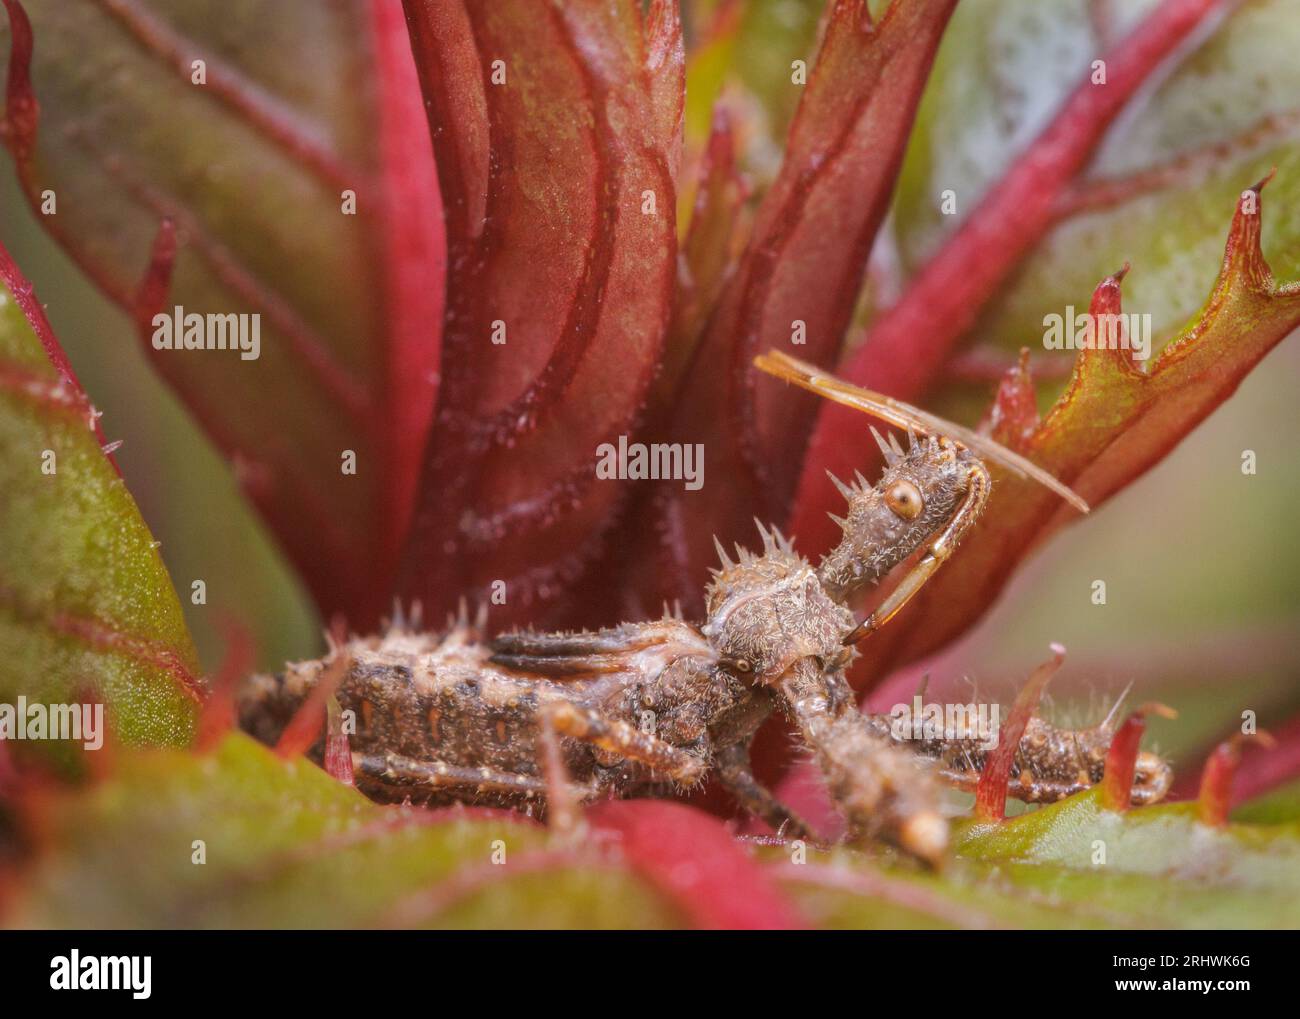 Insetto spiny assasin (Sinea spinipes) - Contea di Hall, Georgia. Una ninfa di insetto assasin si trova all'interno del gruppo di foglie di una pianta di impatiens. Foto Stock